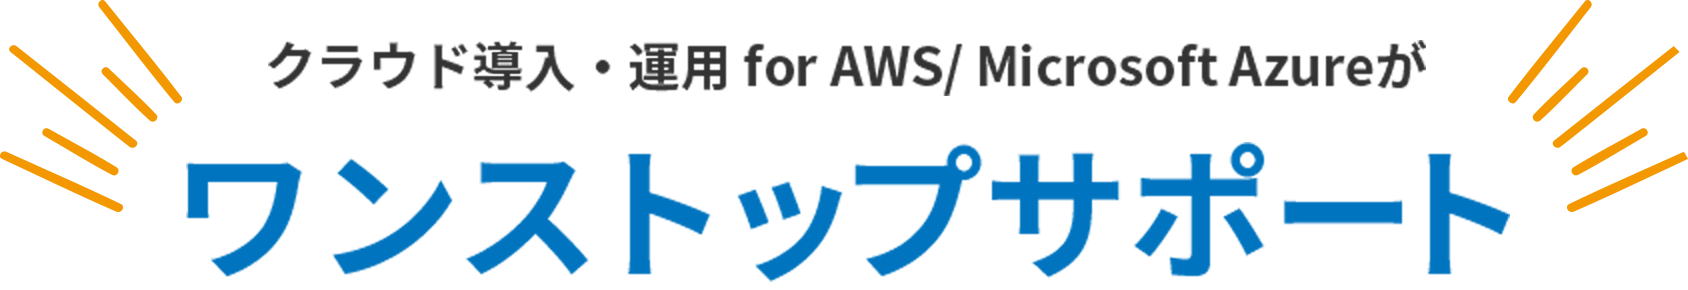 クラウド導入・運用 for AWS/ Microsoft Azureがワンストップサポート